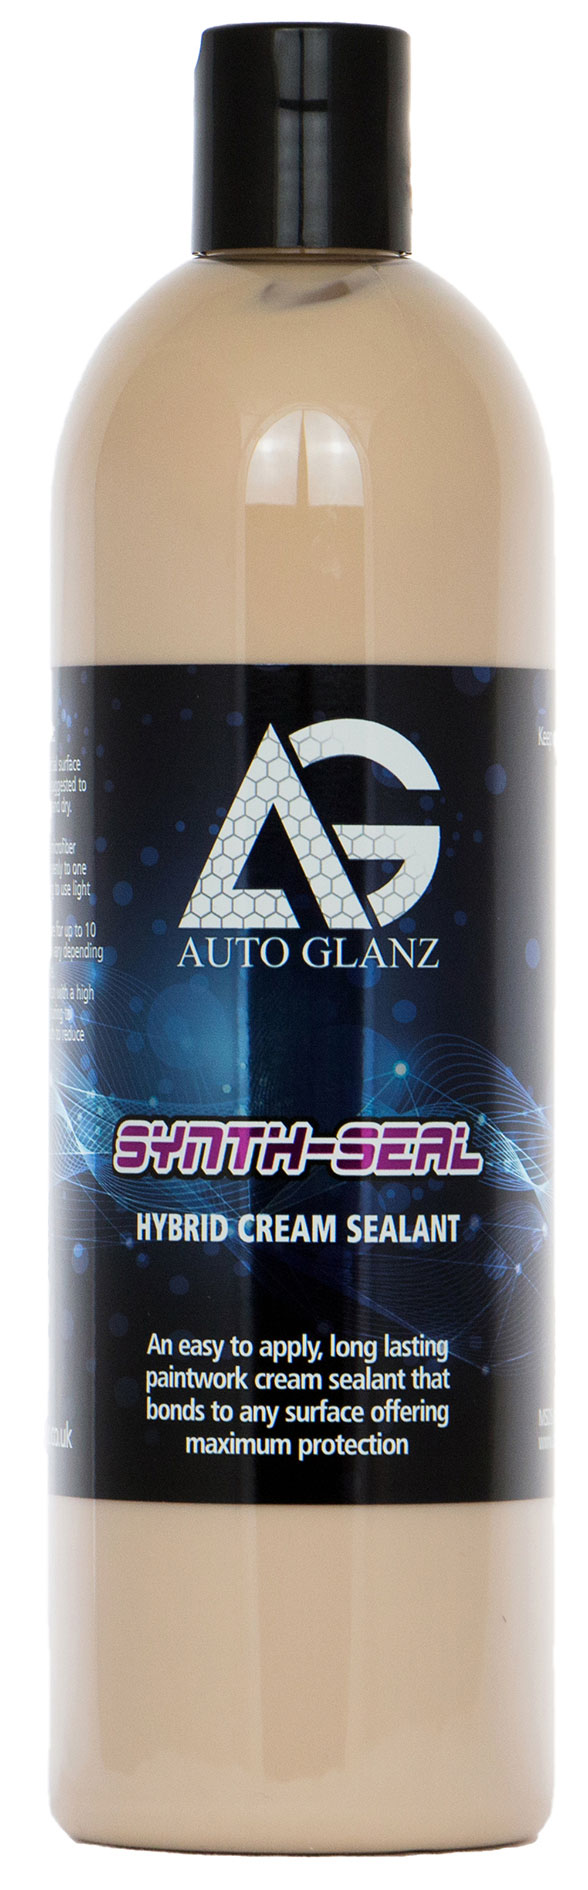 Glanzwelt Shop - AutoGlanz Synth-Seal HYBRID CREAM SEALANT 500ml